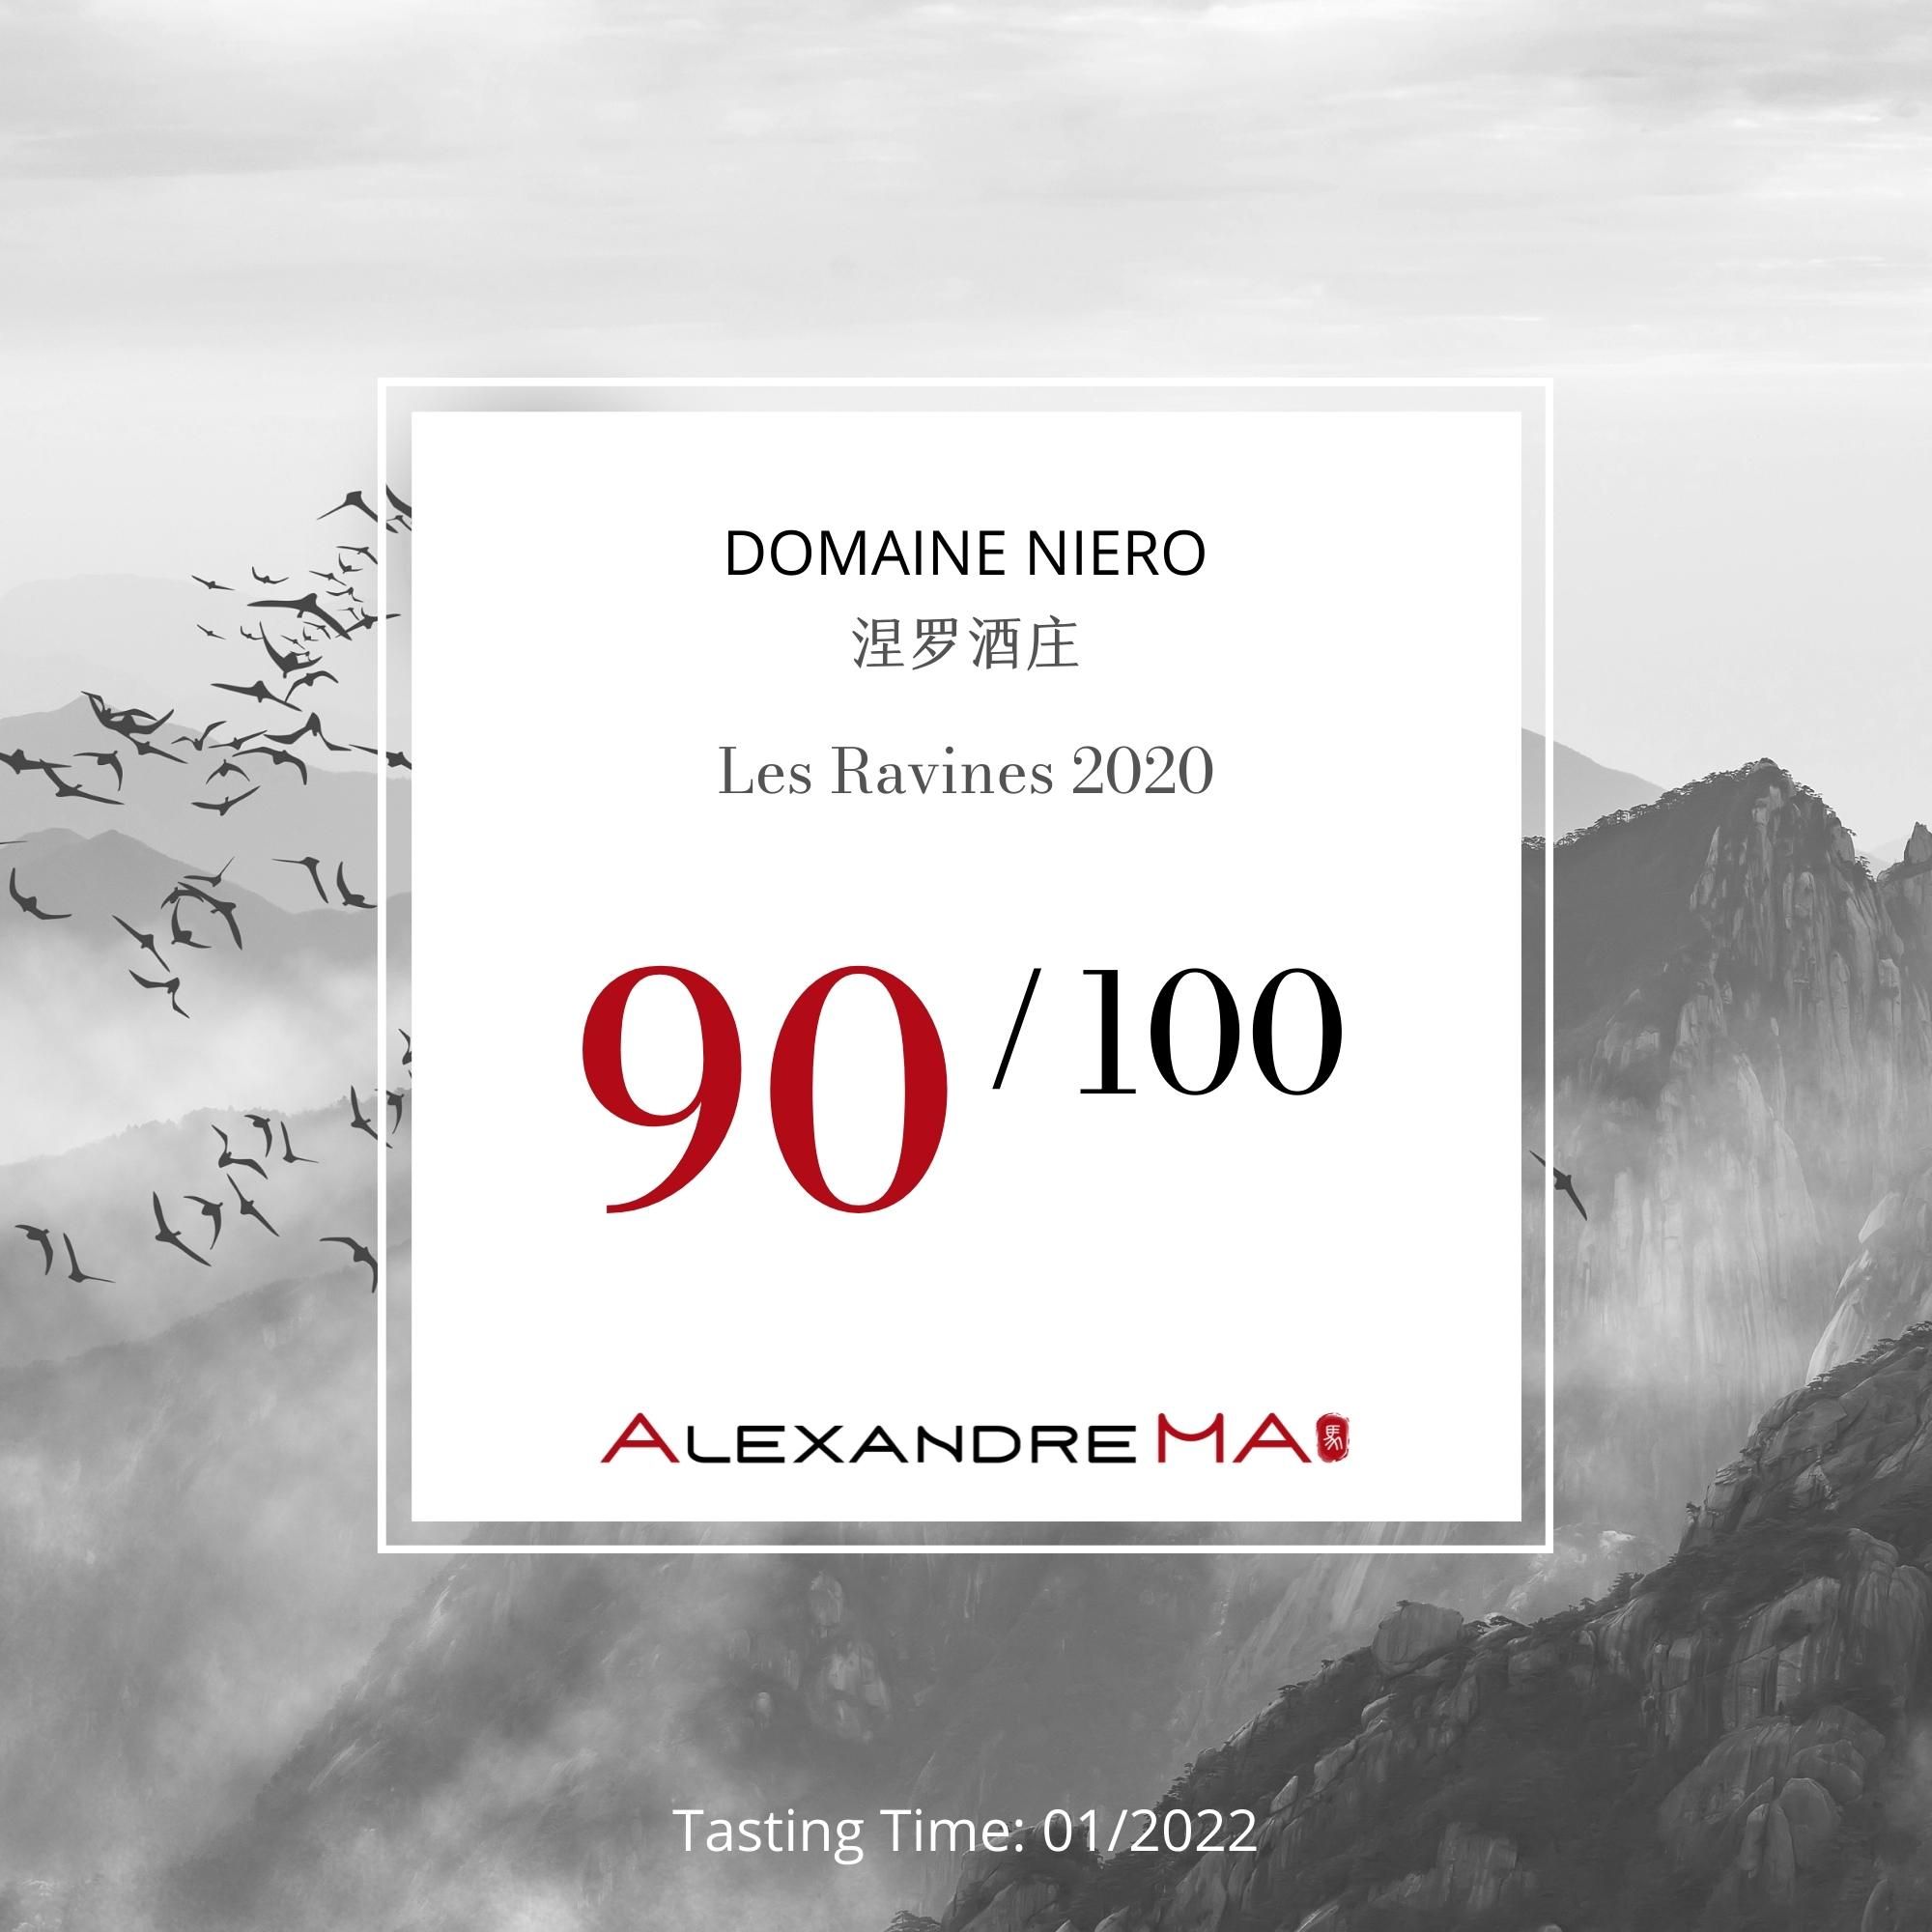 Domaine Niero 涅罗酒庄-Les Ravines 2020 - Alexandre Ma